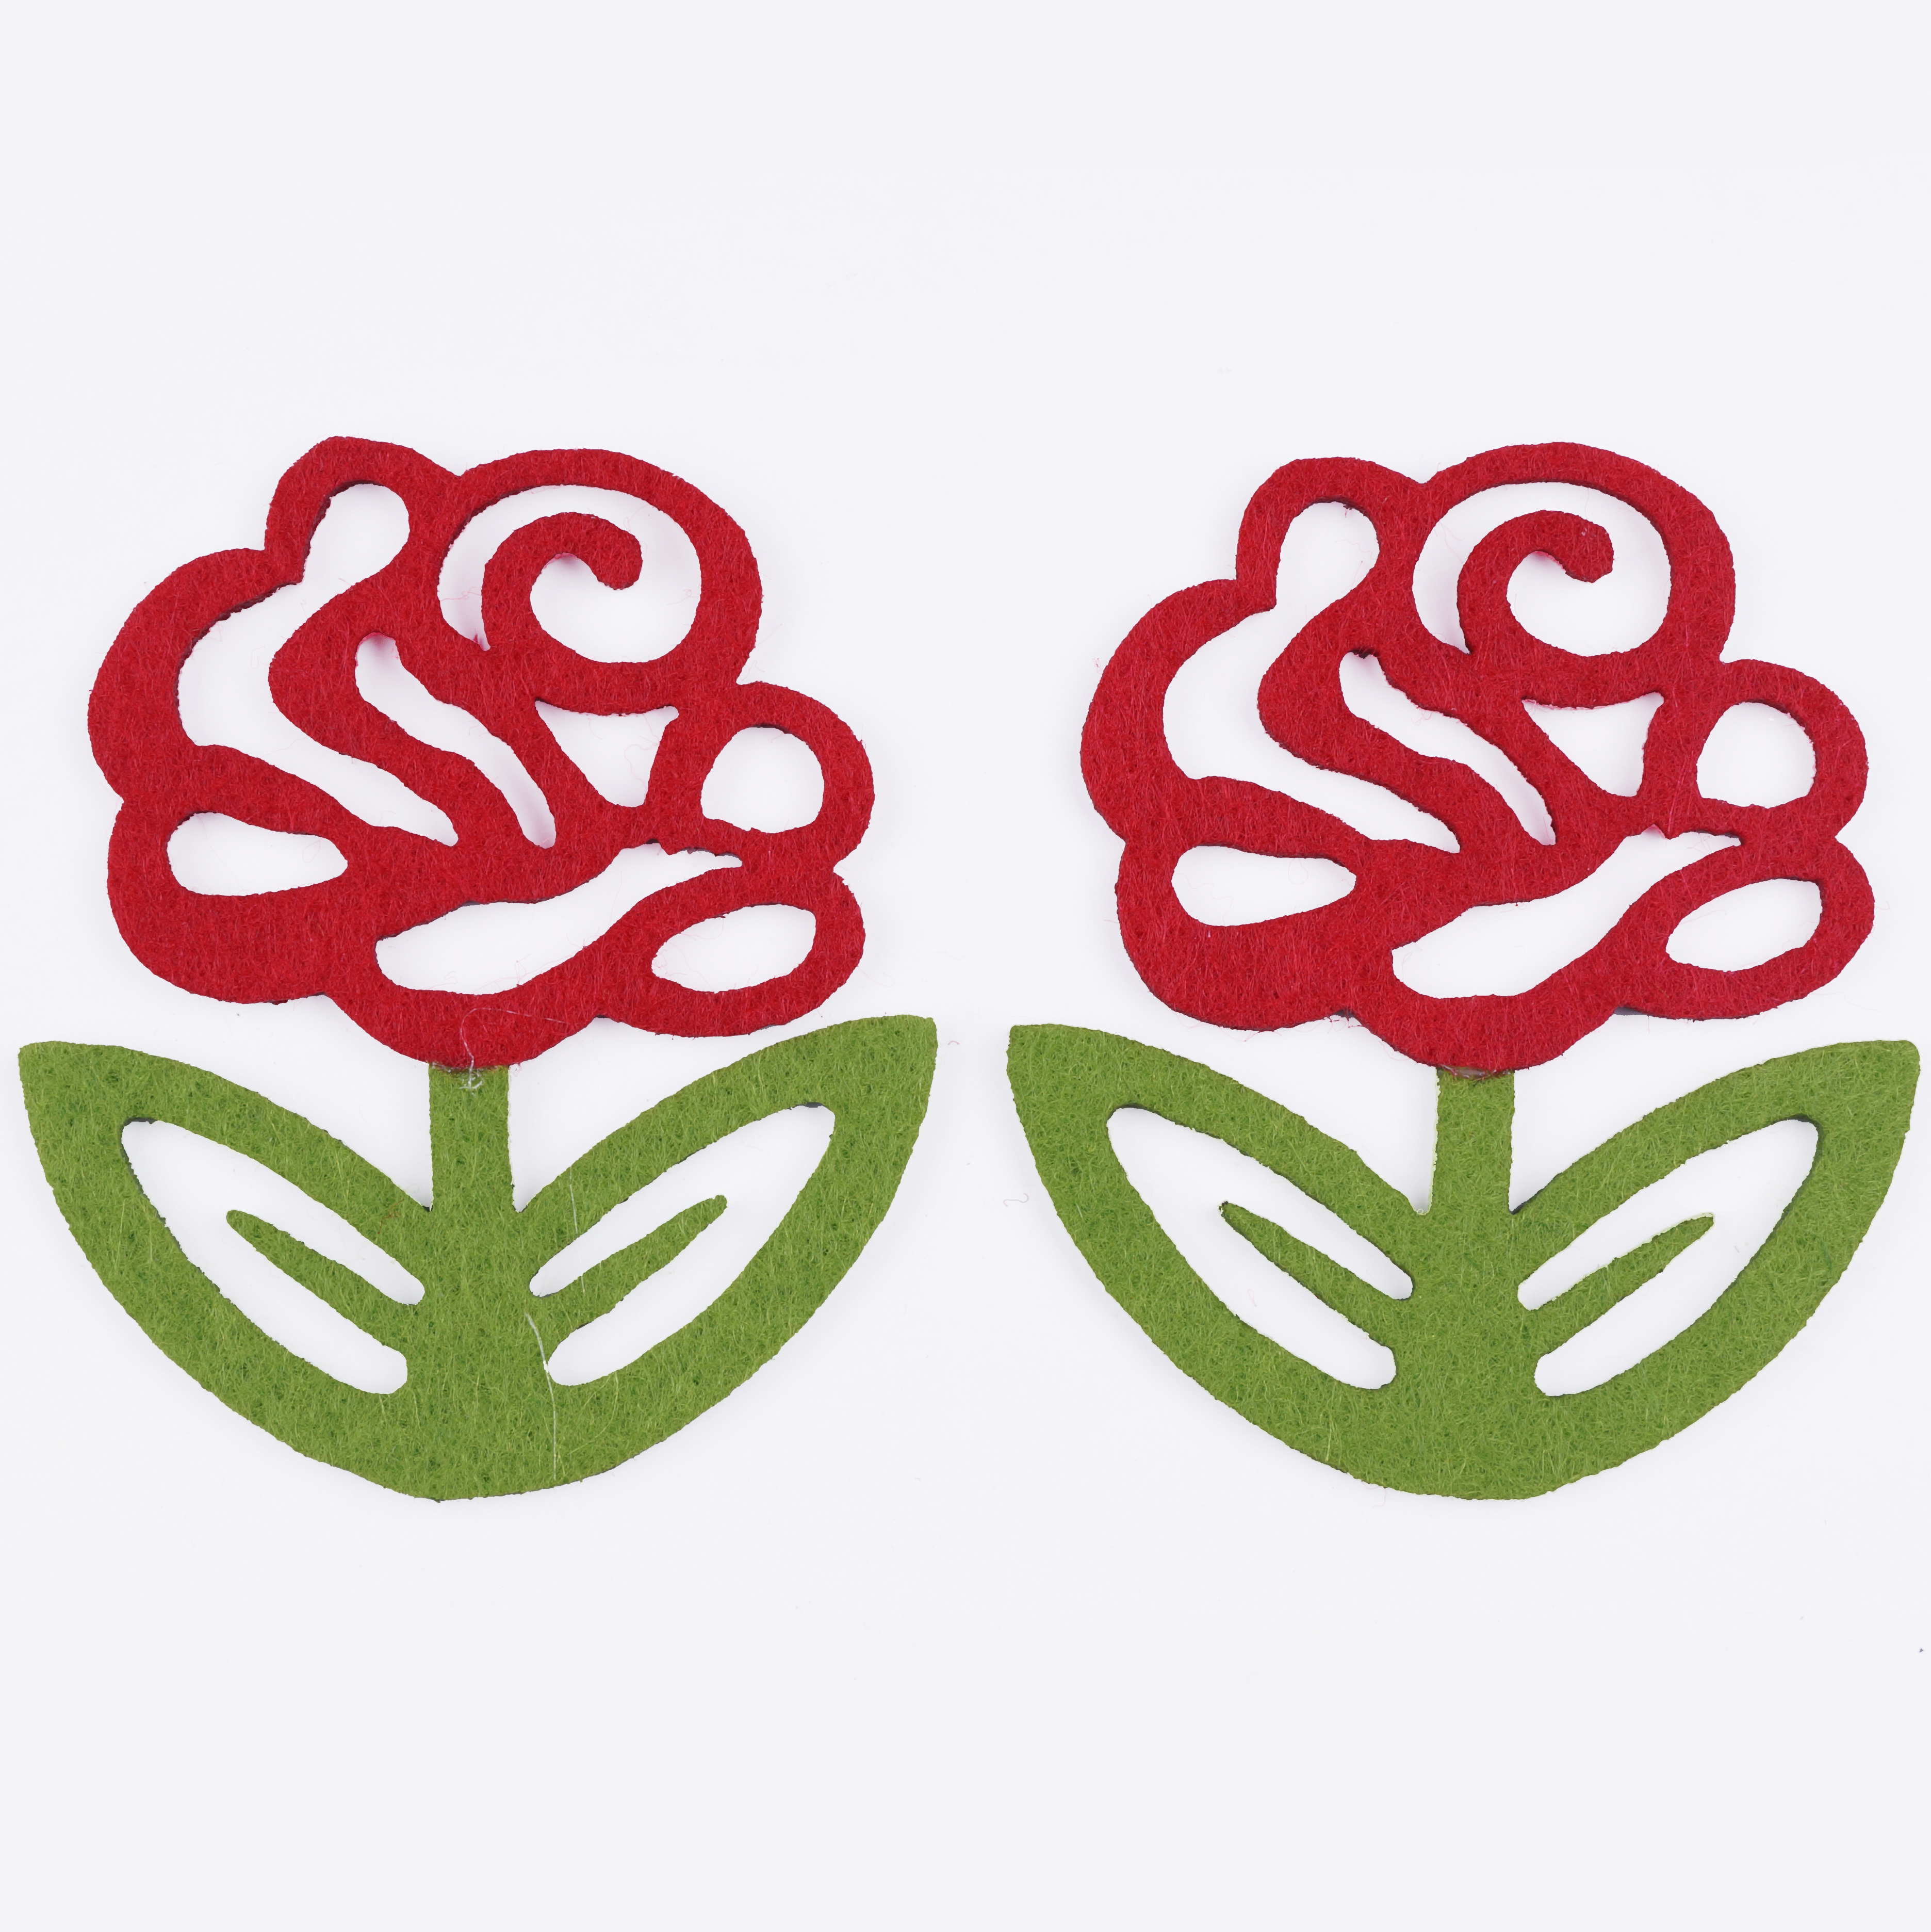 펠트소품 꽃모양 빨강 장미 2개입 세트 유치원 학교 교실 환경꾸미기 구성